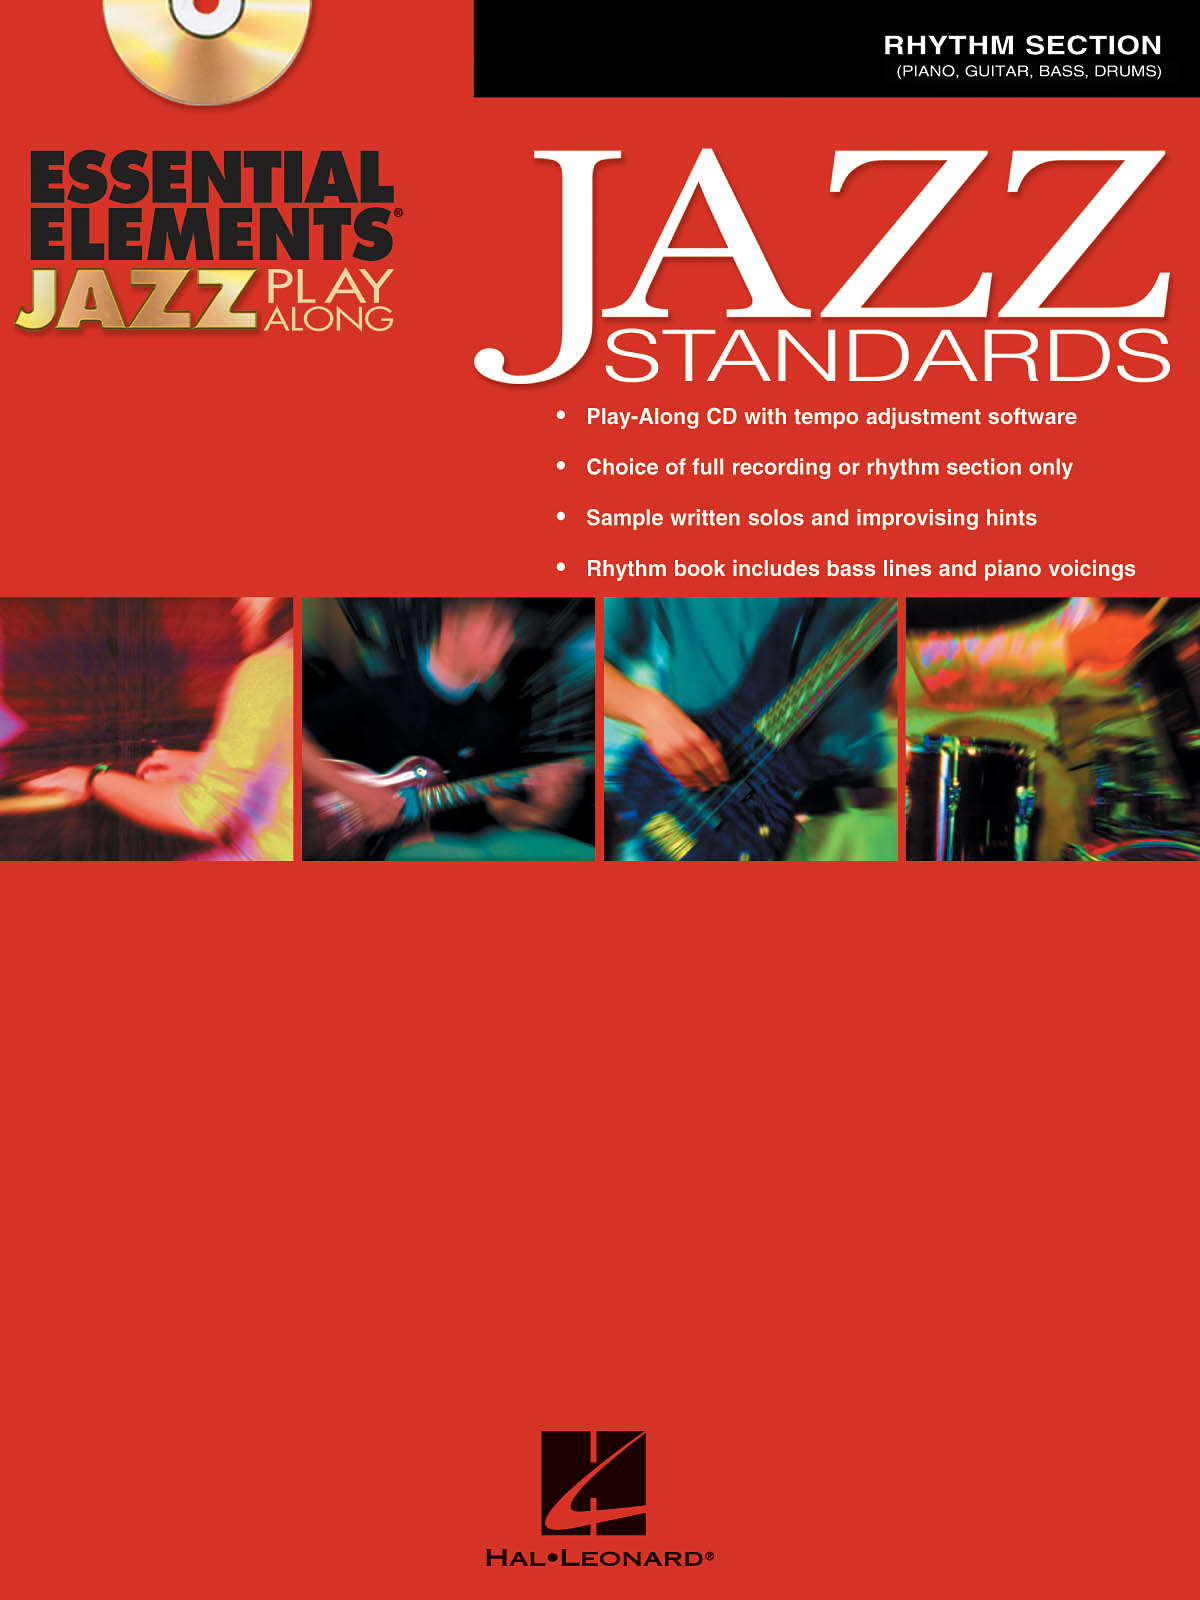 Essential Elements Jazz Play-Along -Jazz Standards - Rhythm Section - noty pro bicí